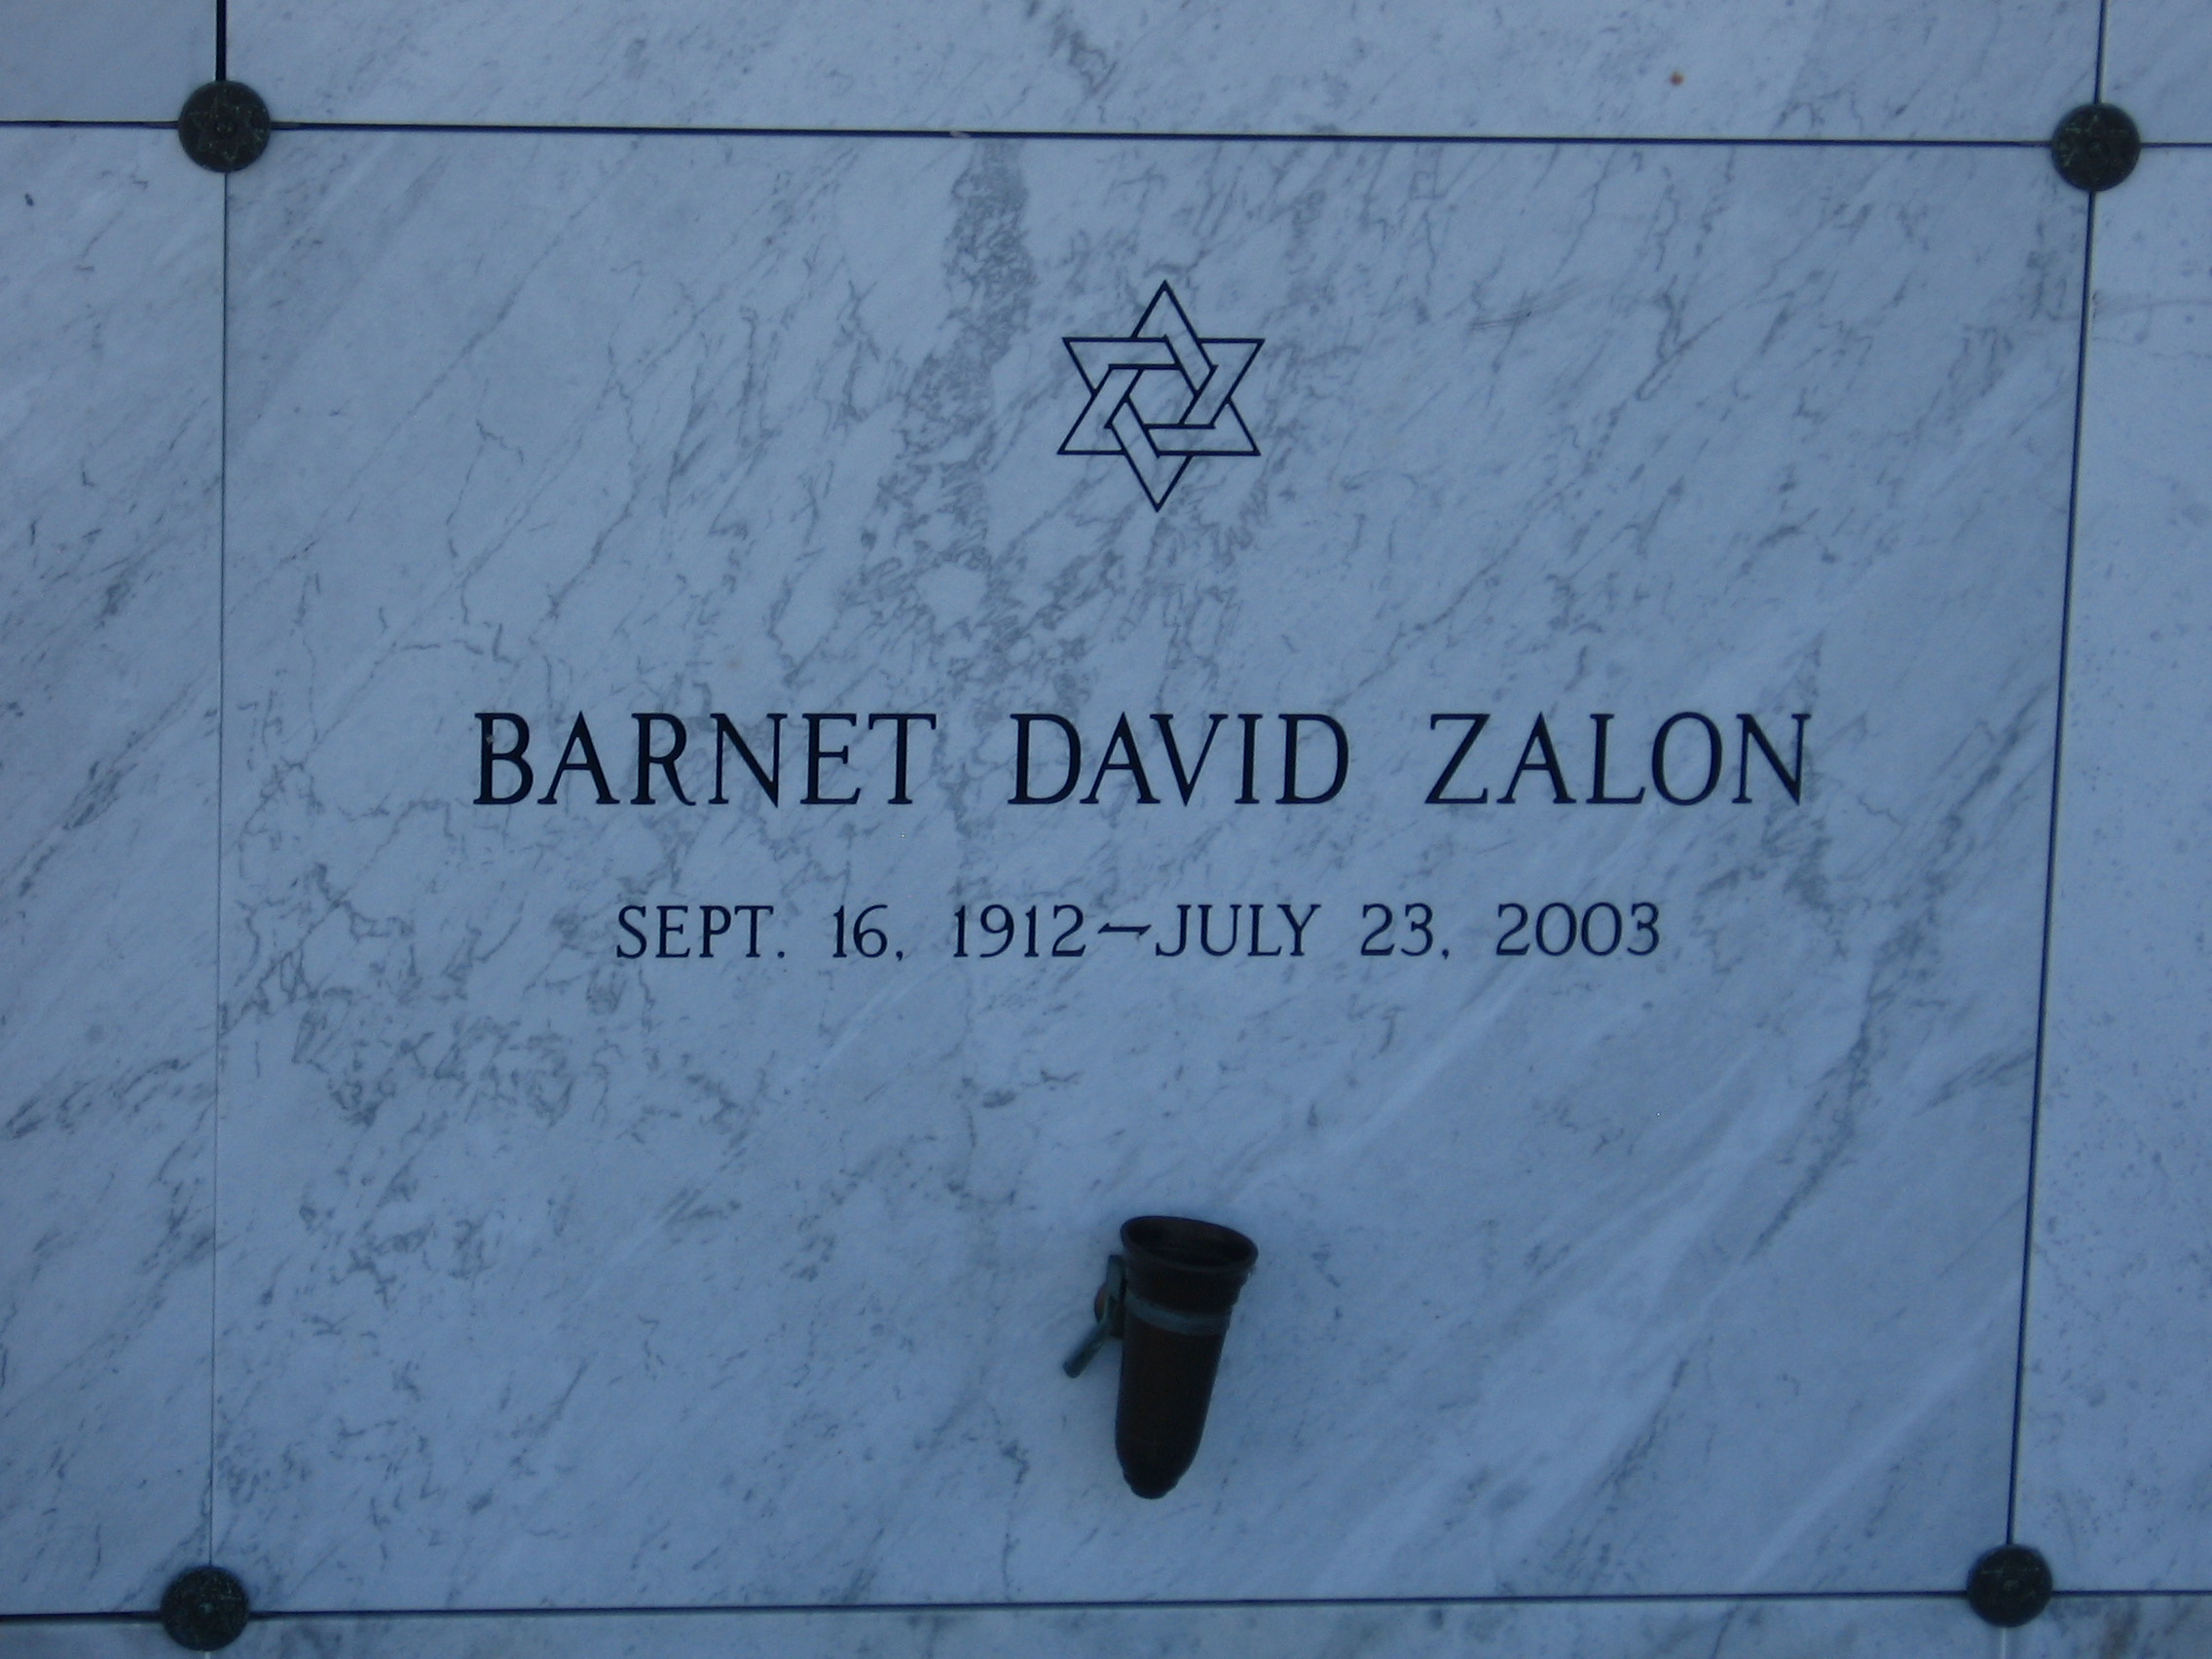 Barnet David Zalon